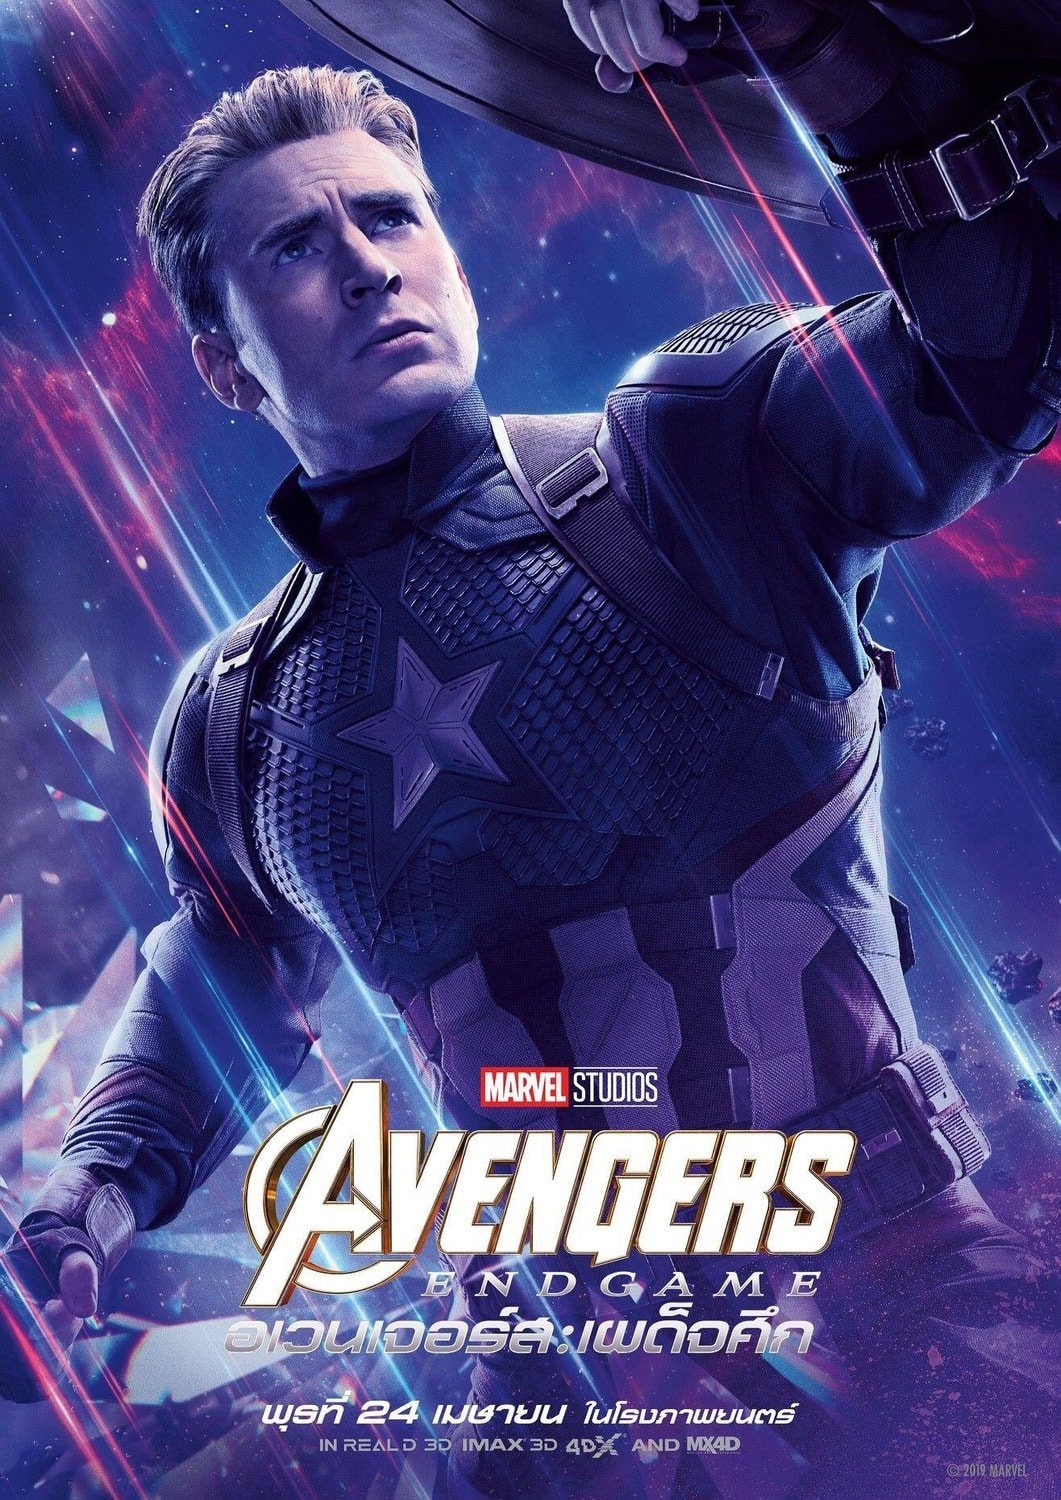 アベンジャーズ エンドゲーム Avengers Endgame 12キャラのポスター画像 ポコねっと